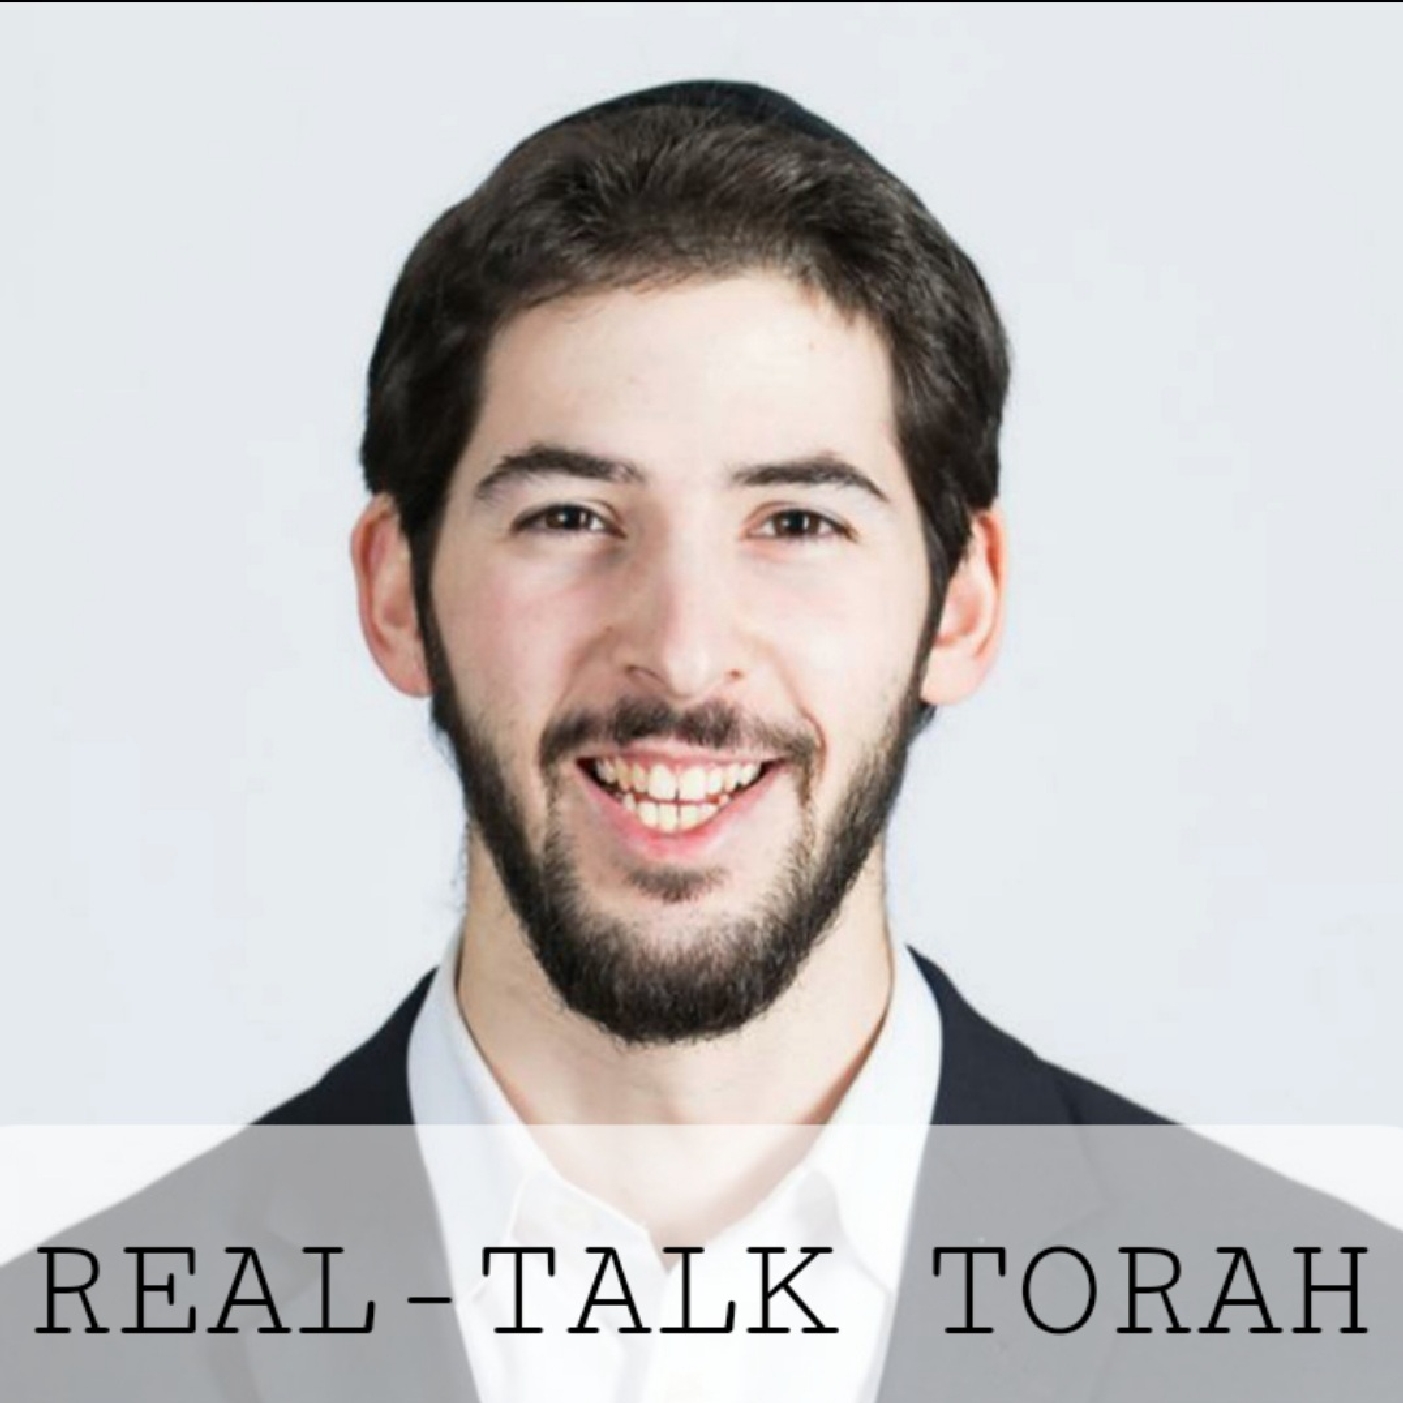 Real-Talk Torah: 